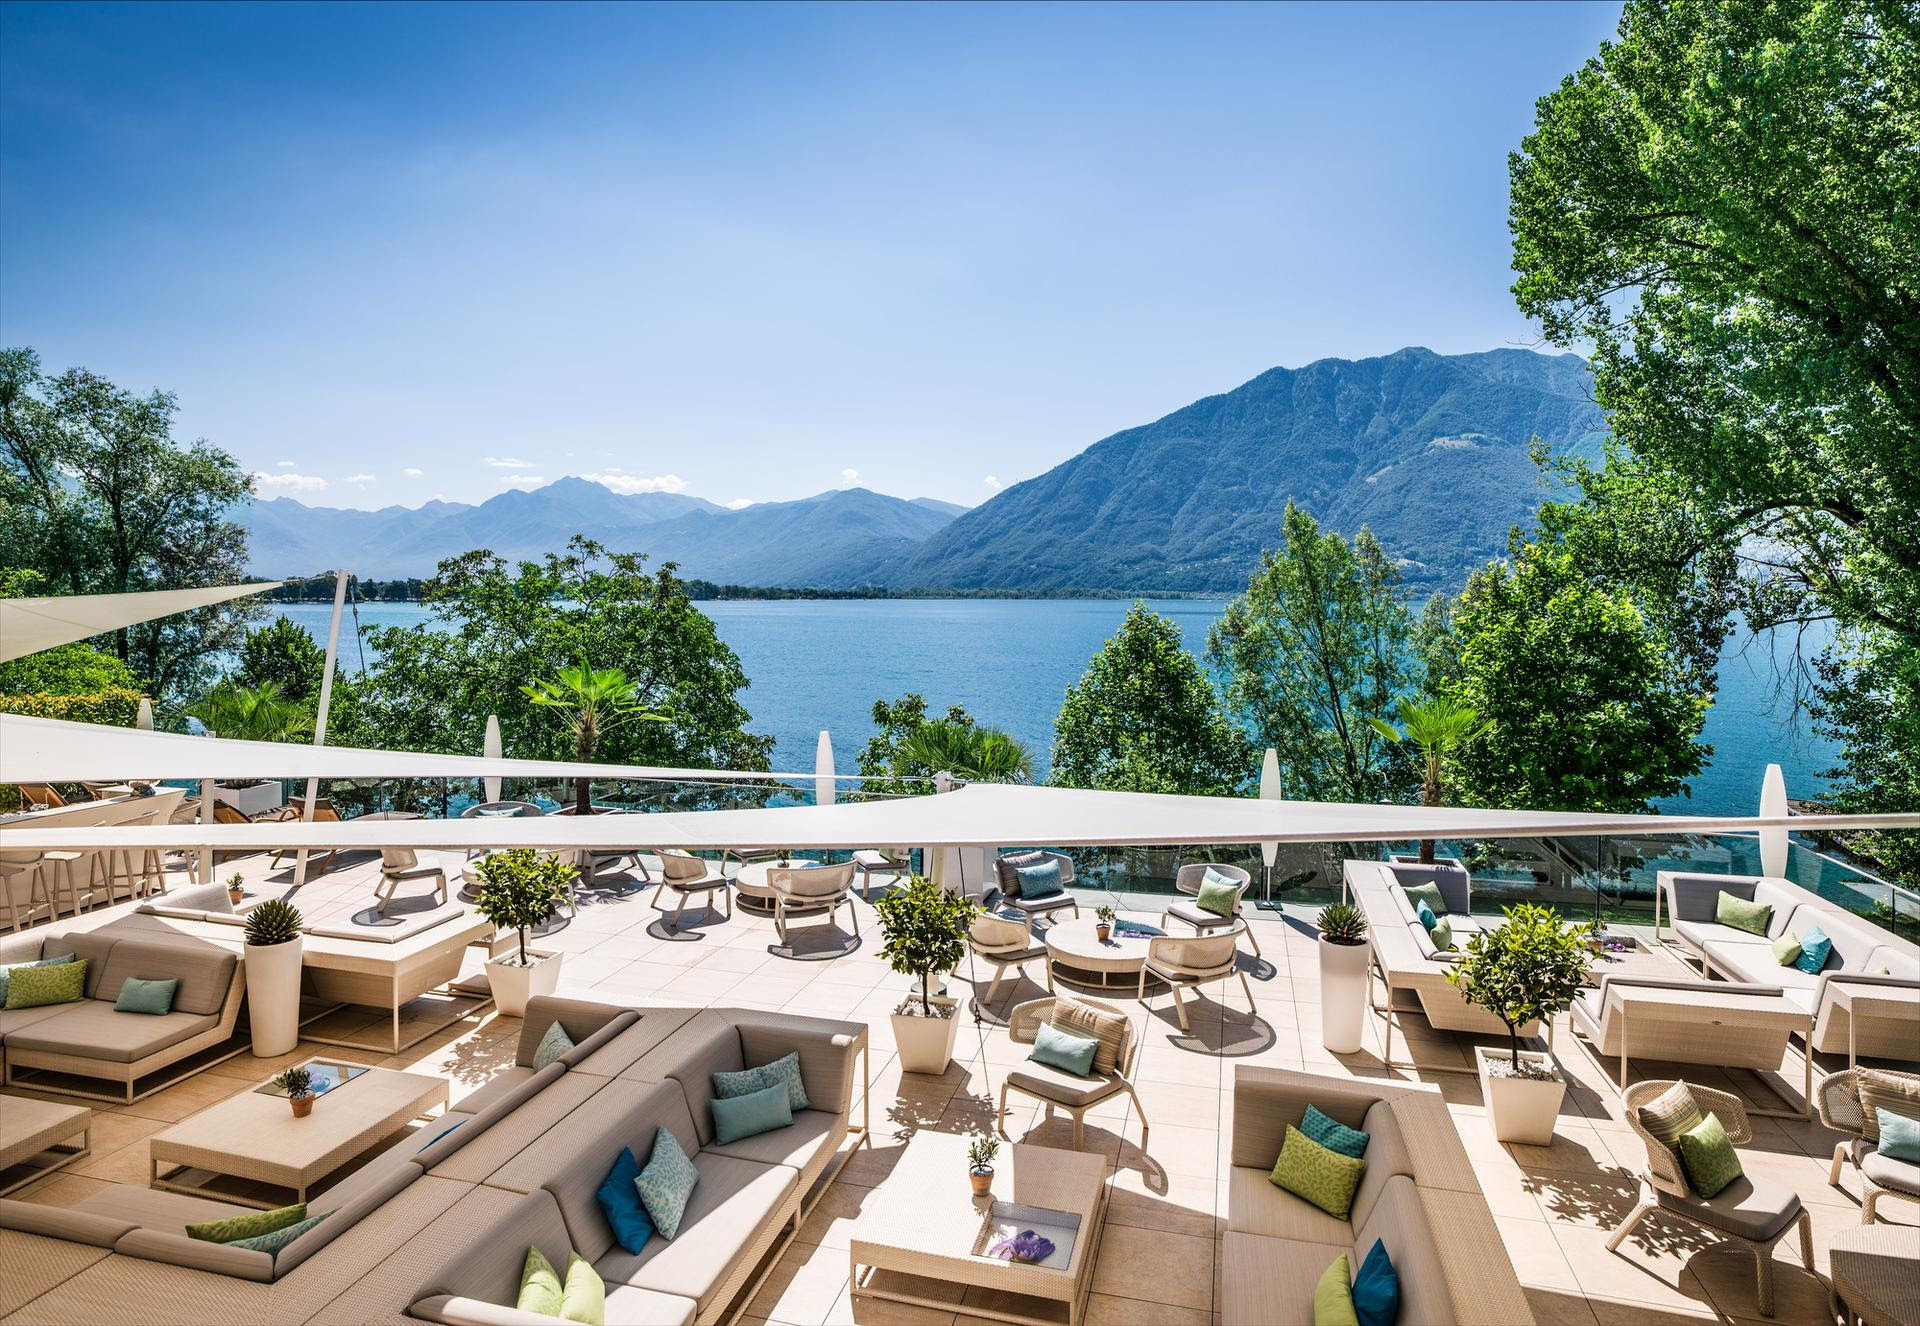 Cena con vista in Ticino: i più bei ristoranti affacciati sull’acqua